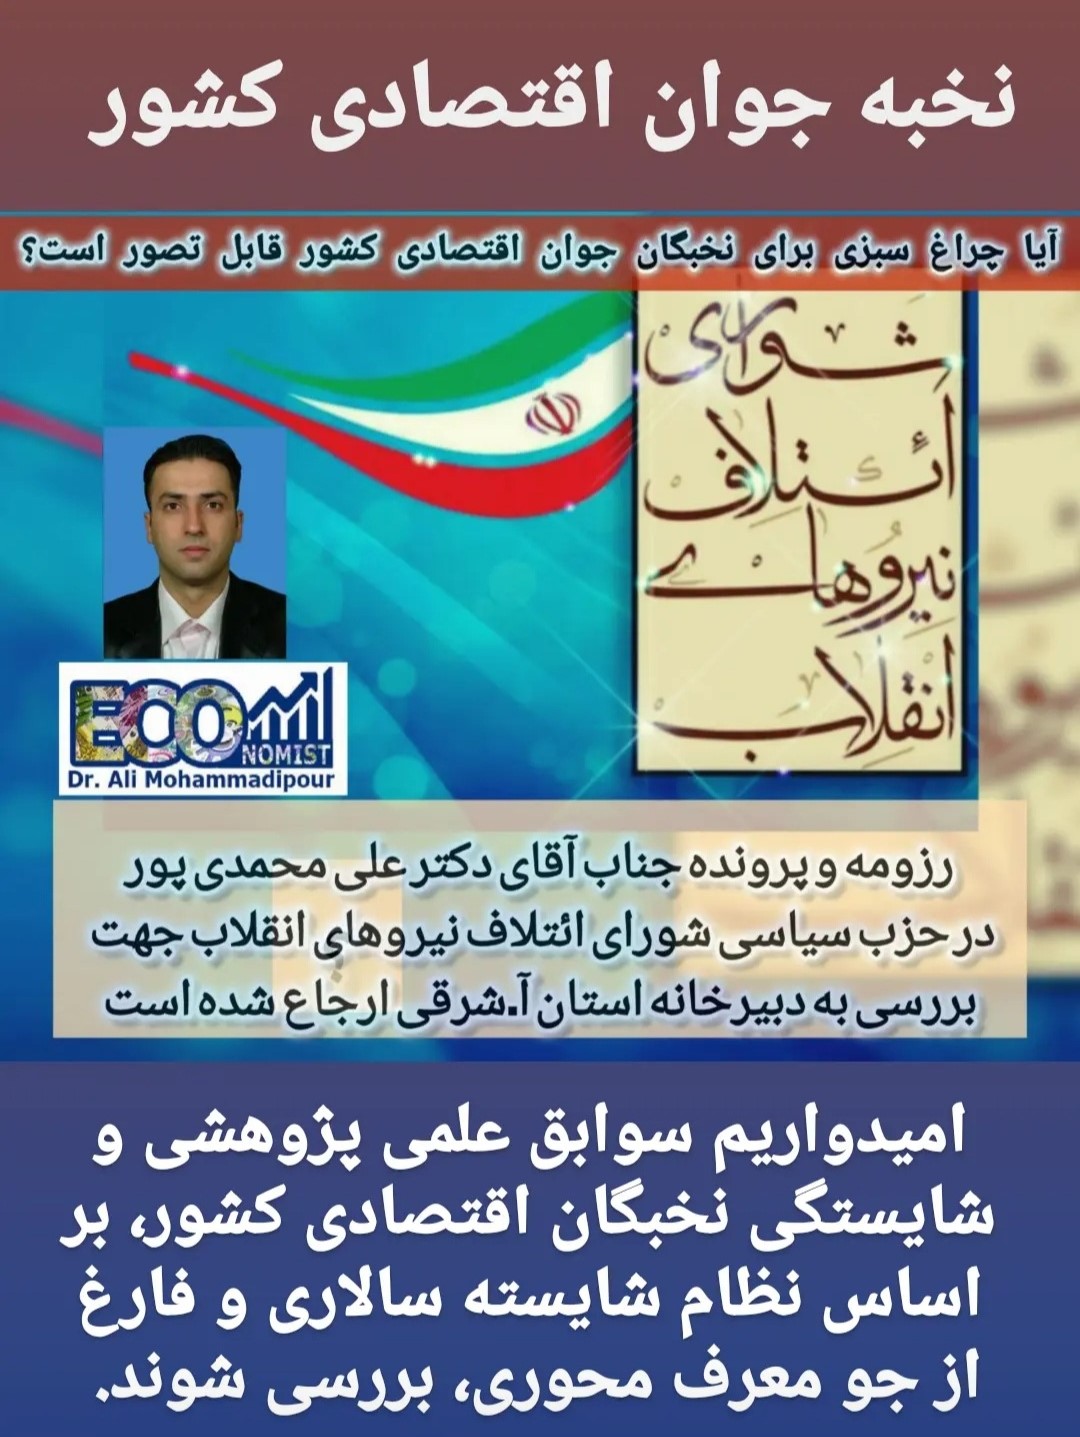 شاخص میزان رای آوری مانع انتخاب دکتر علی محمدی پور توسط شواری ائتلاف نیروهای انقلاب گردید